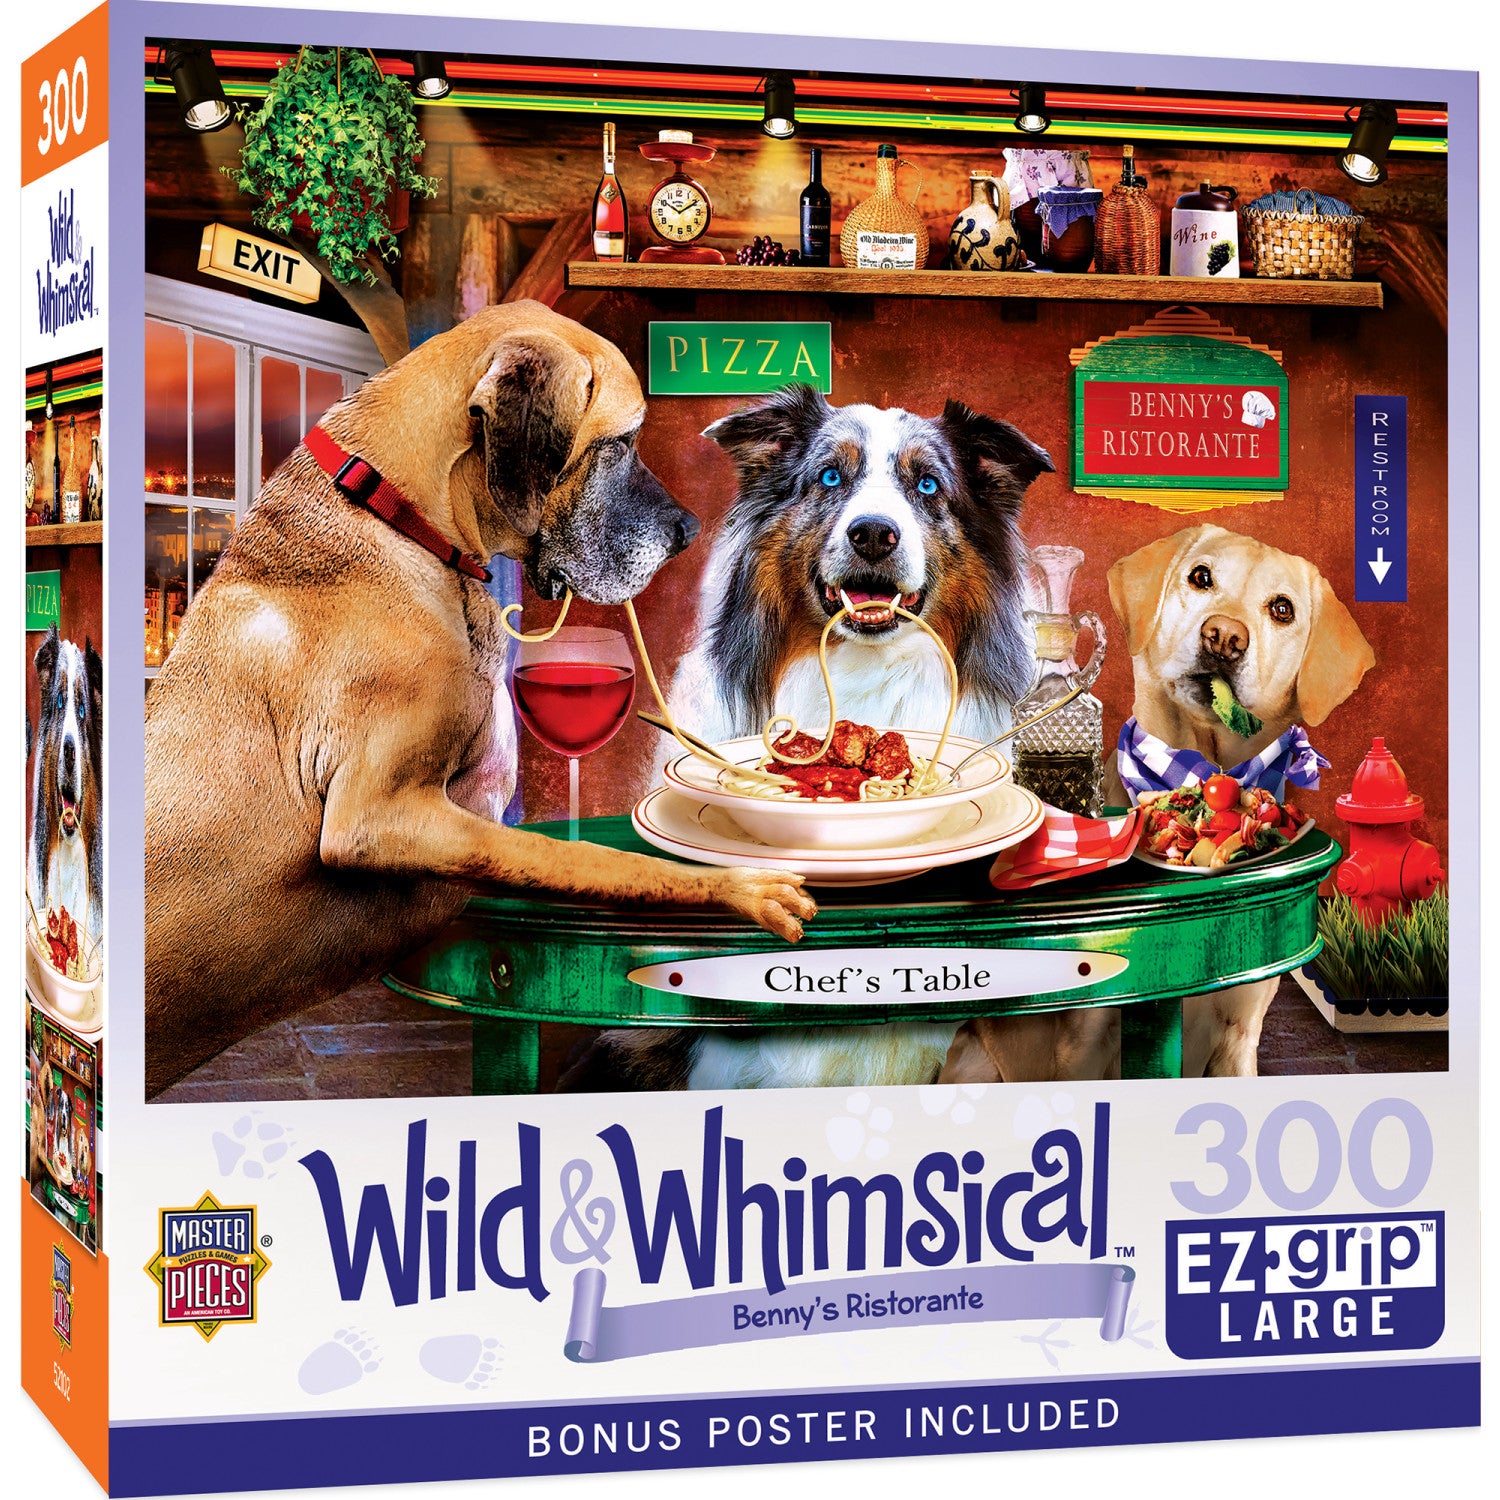 Wild & Whimsical - Benny's Ristorante 300 Piece EZ Grip Jigsaw Puzzle